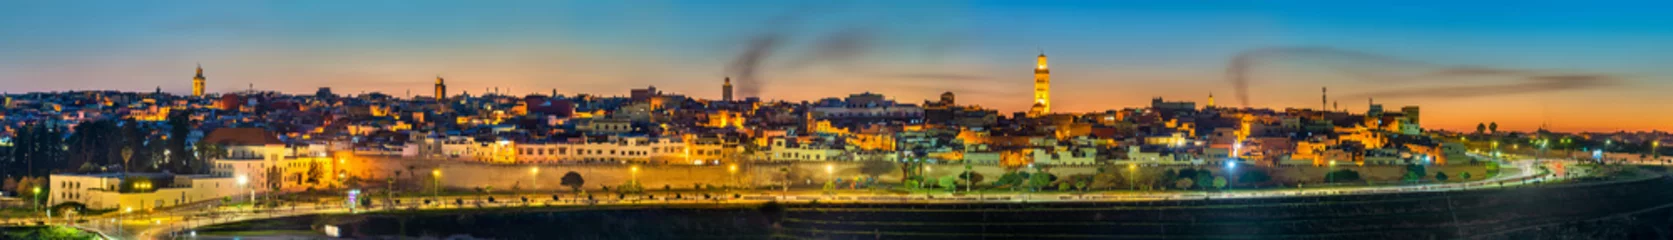 Papier Peint photo Lavable Maroc Panorama de Meknès en soirée - Maroc